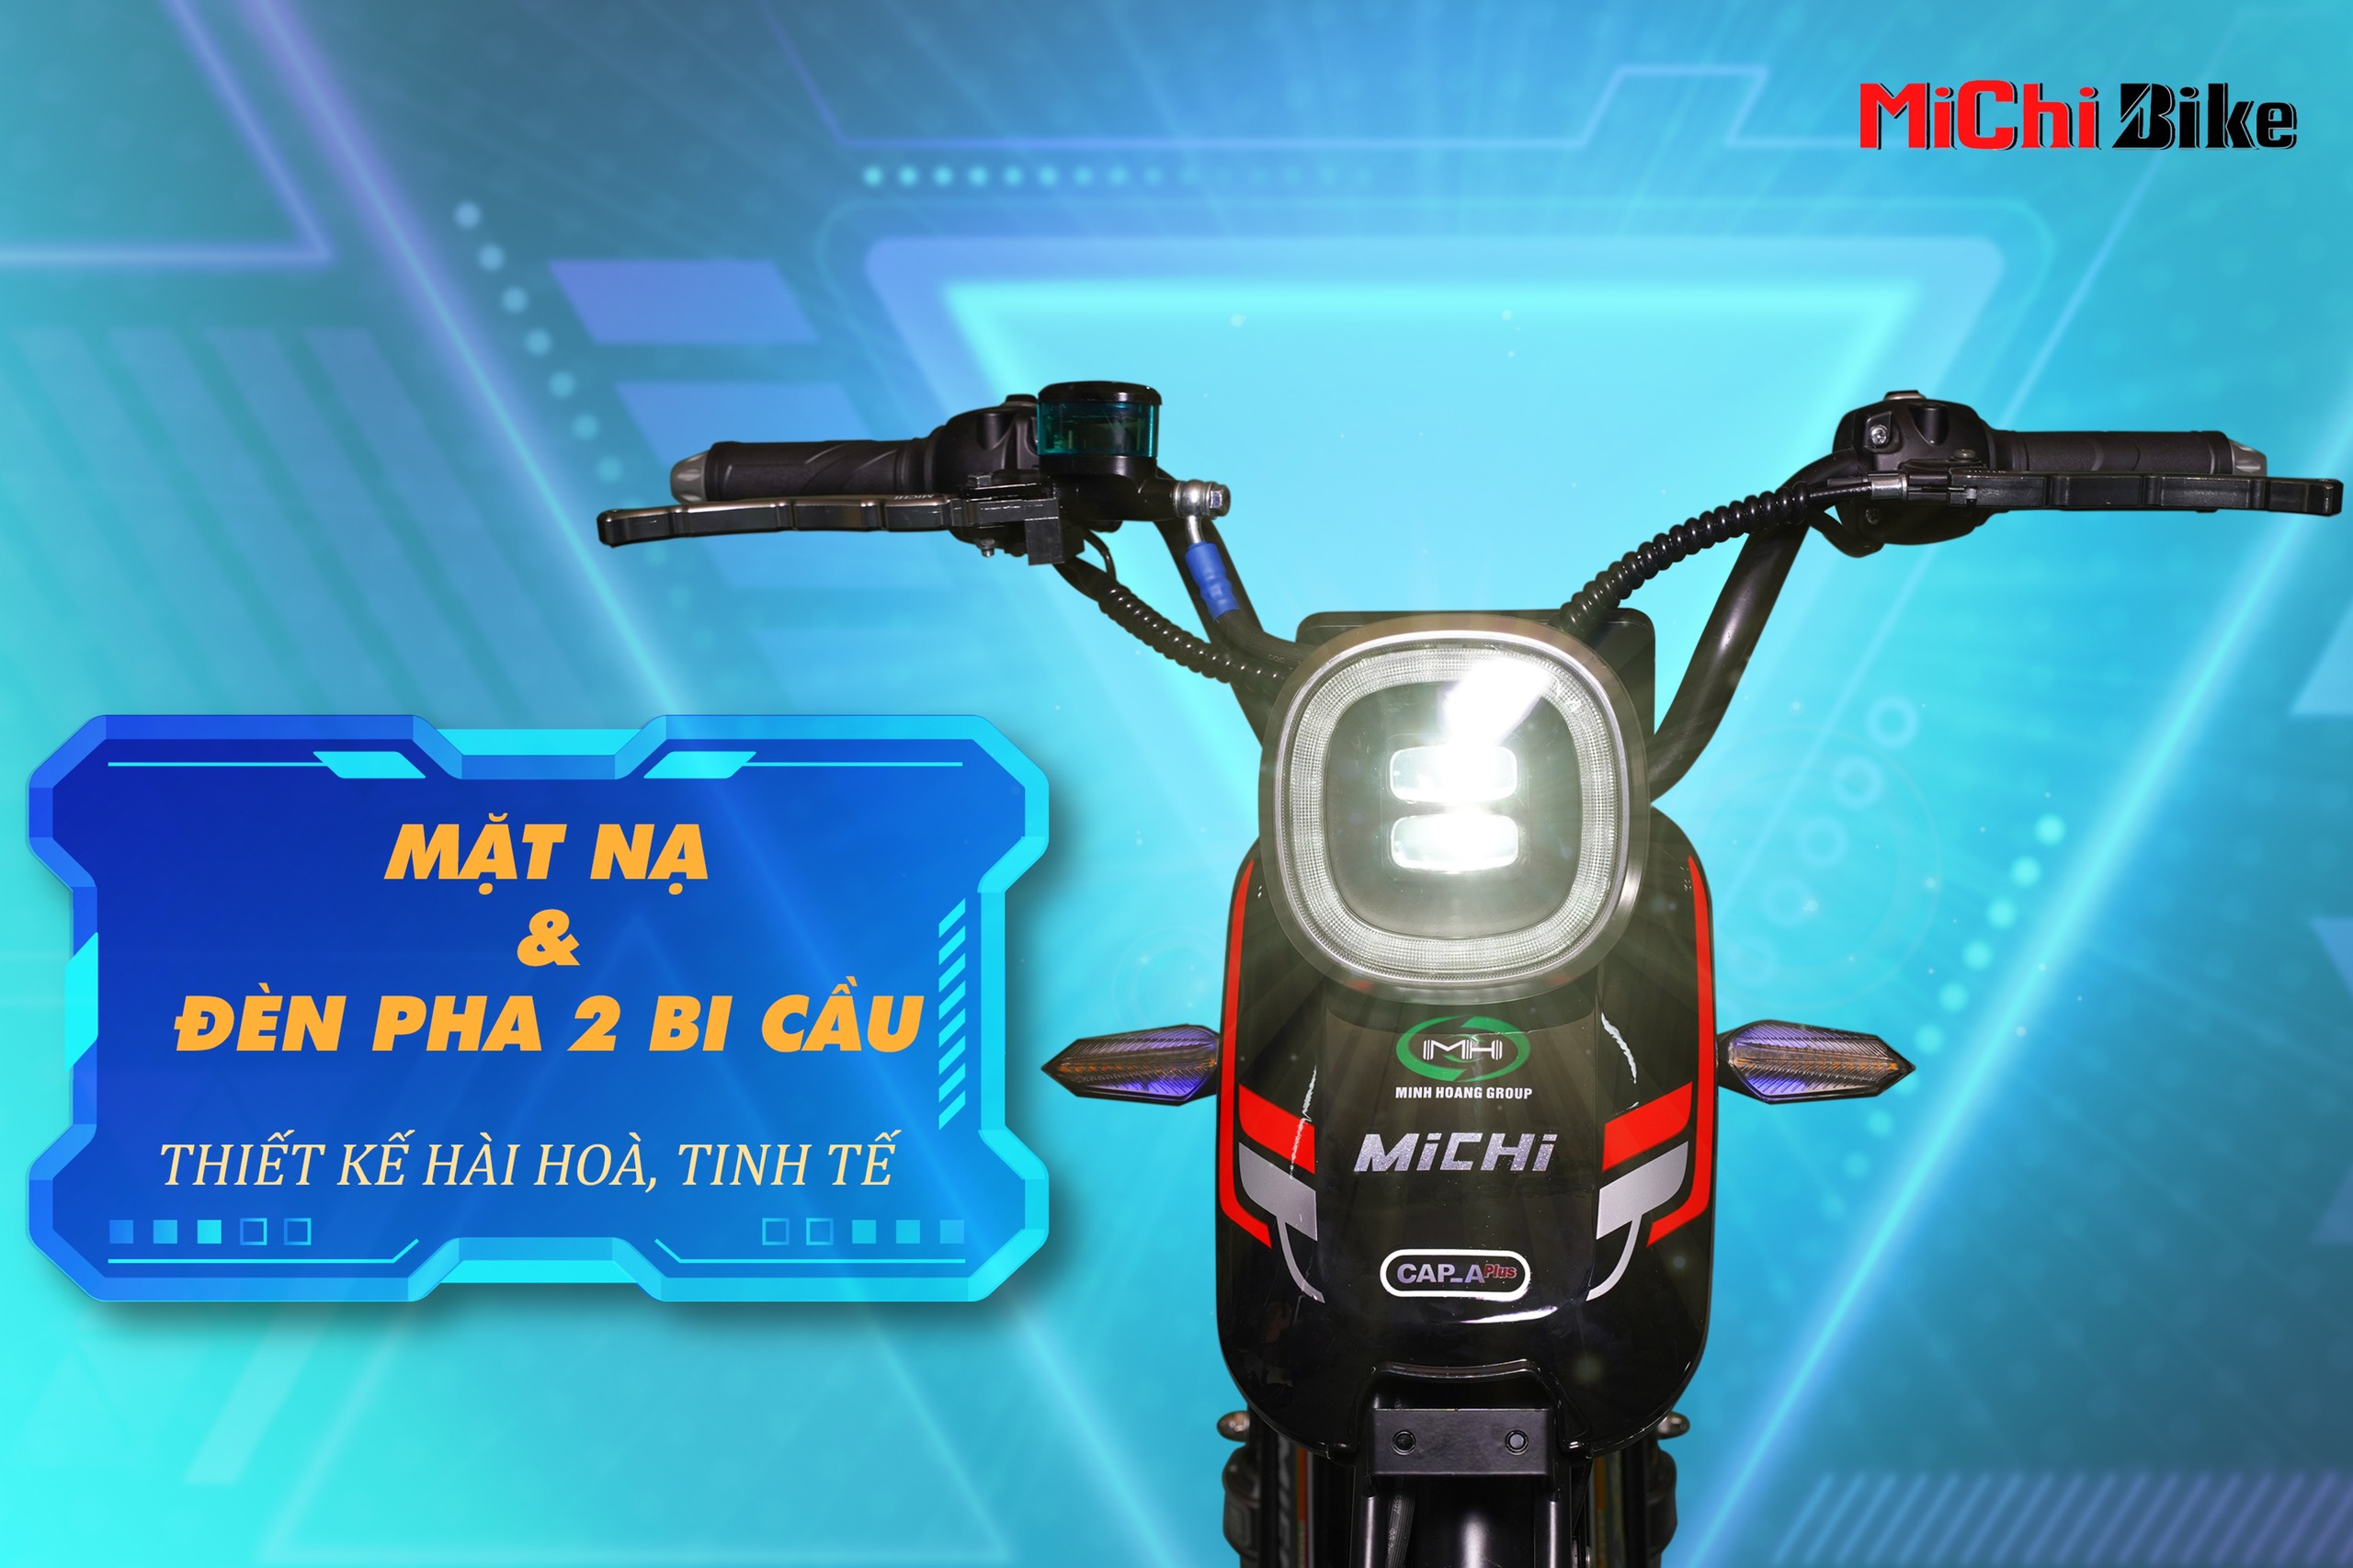 Xe đạp điện Michi X10